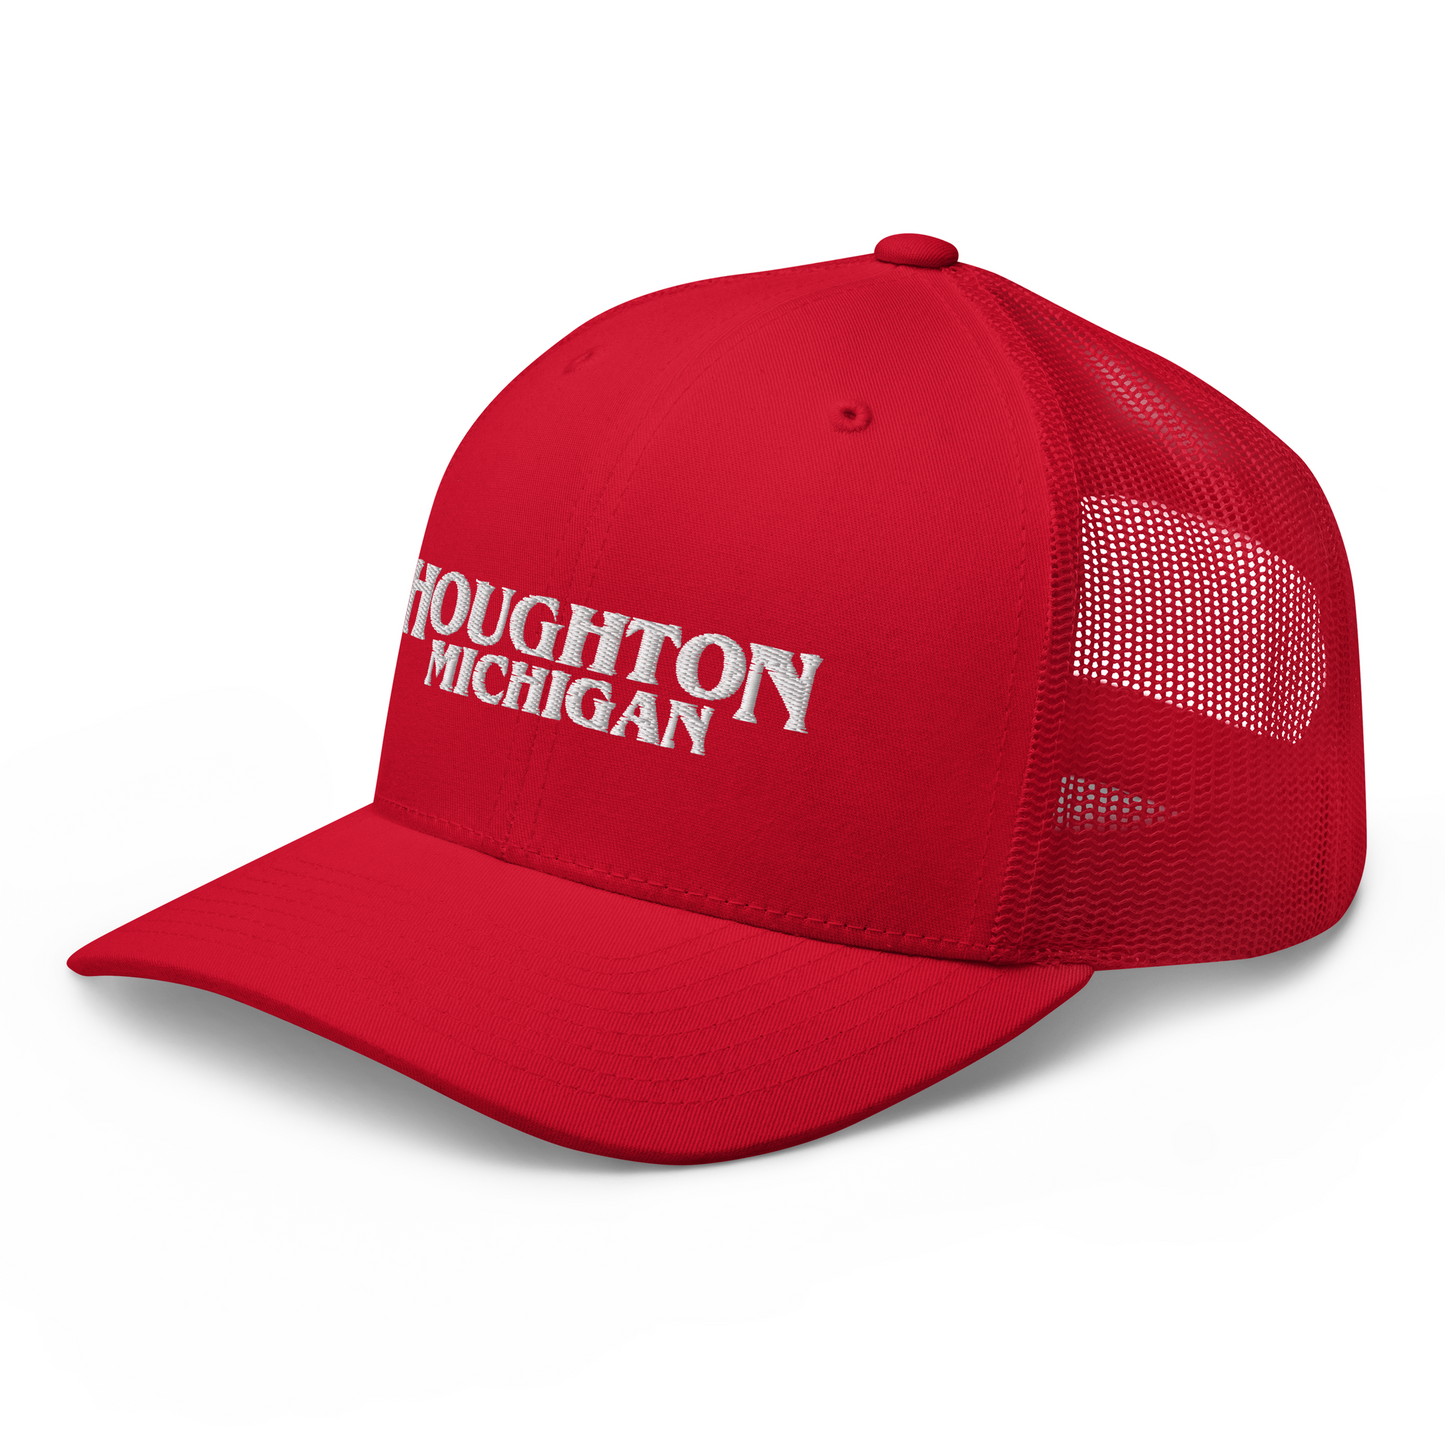 'Houghton Michigan' Trucker Hat (1980s Drama Parody)